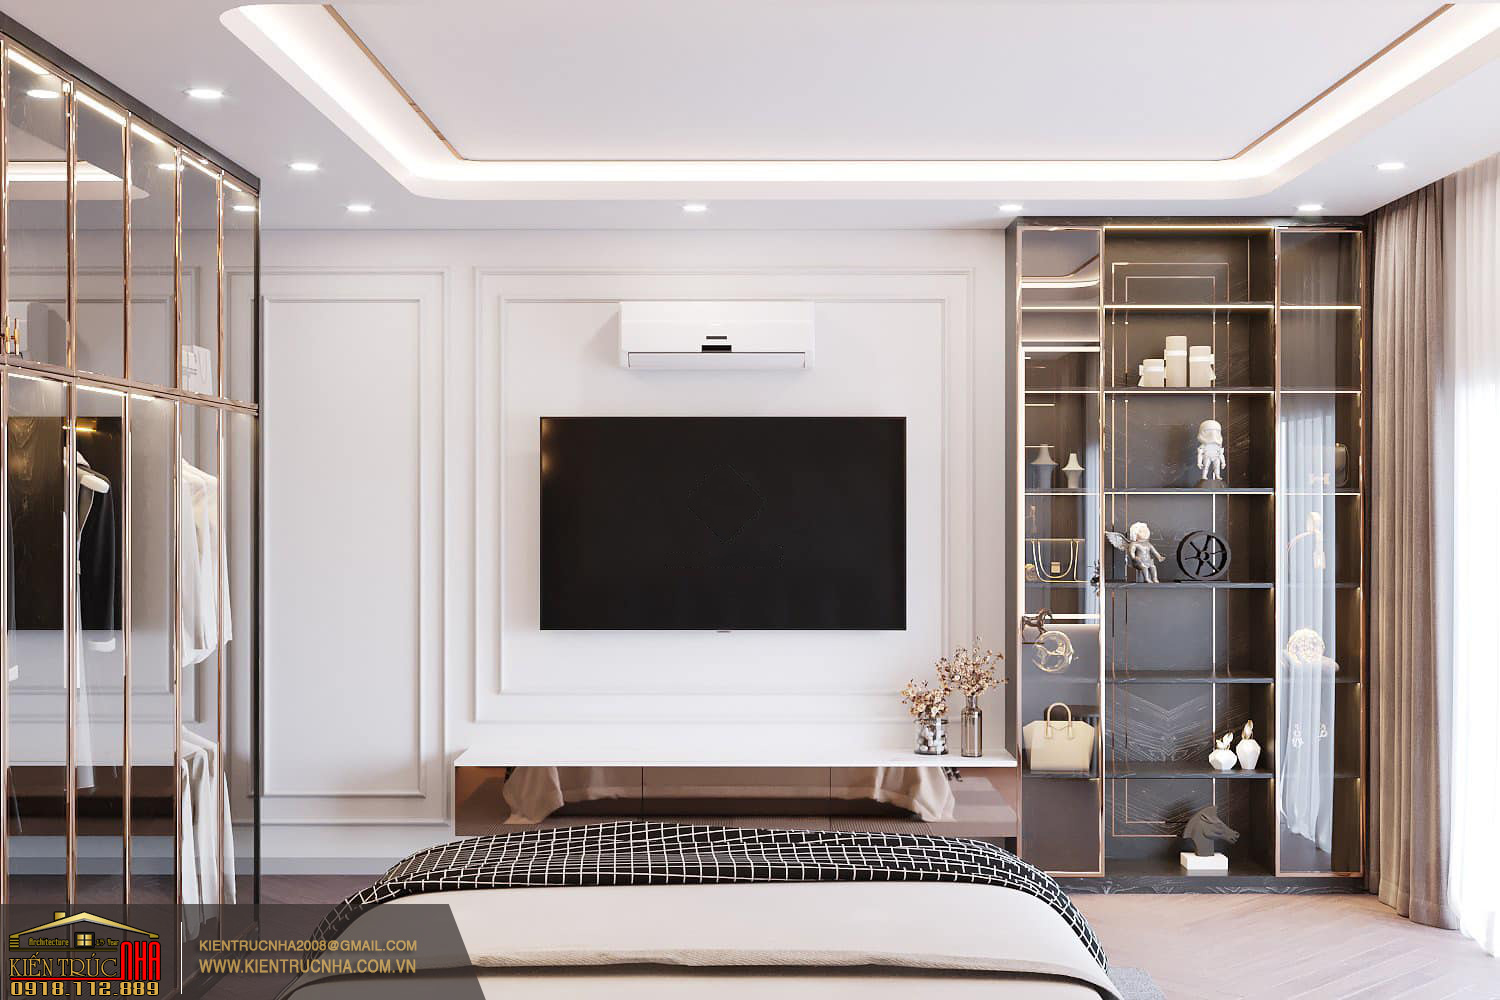 Mẫu nội thất luxury đẳng cấp như khách sạn 5 sao cđt: anh Vinh Bình Định